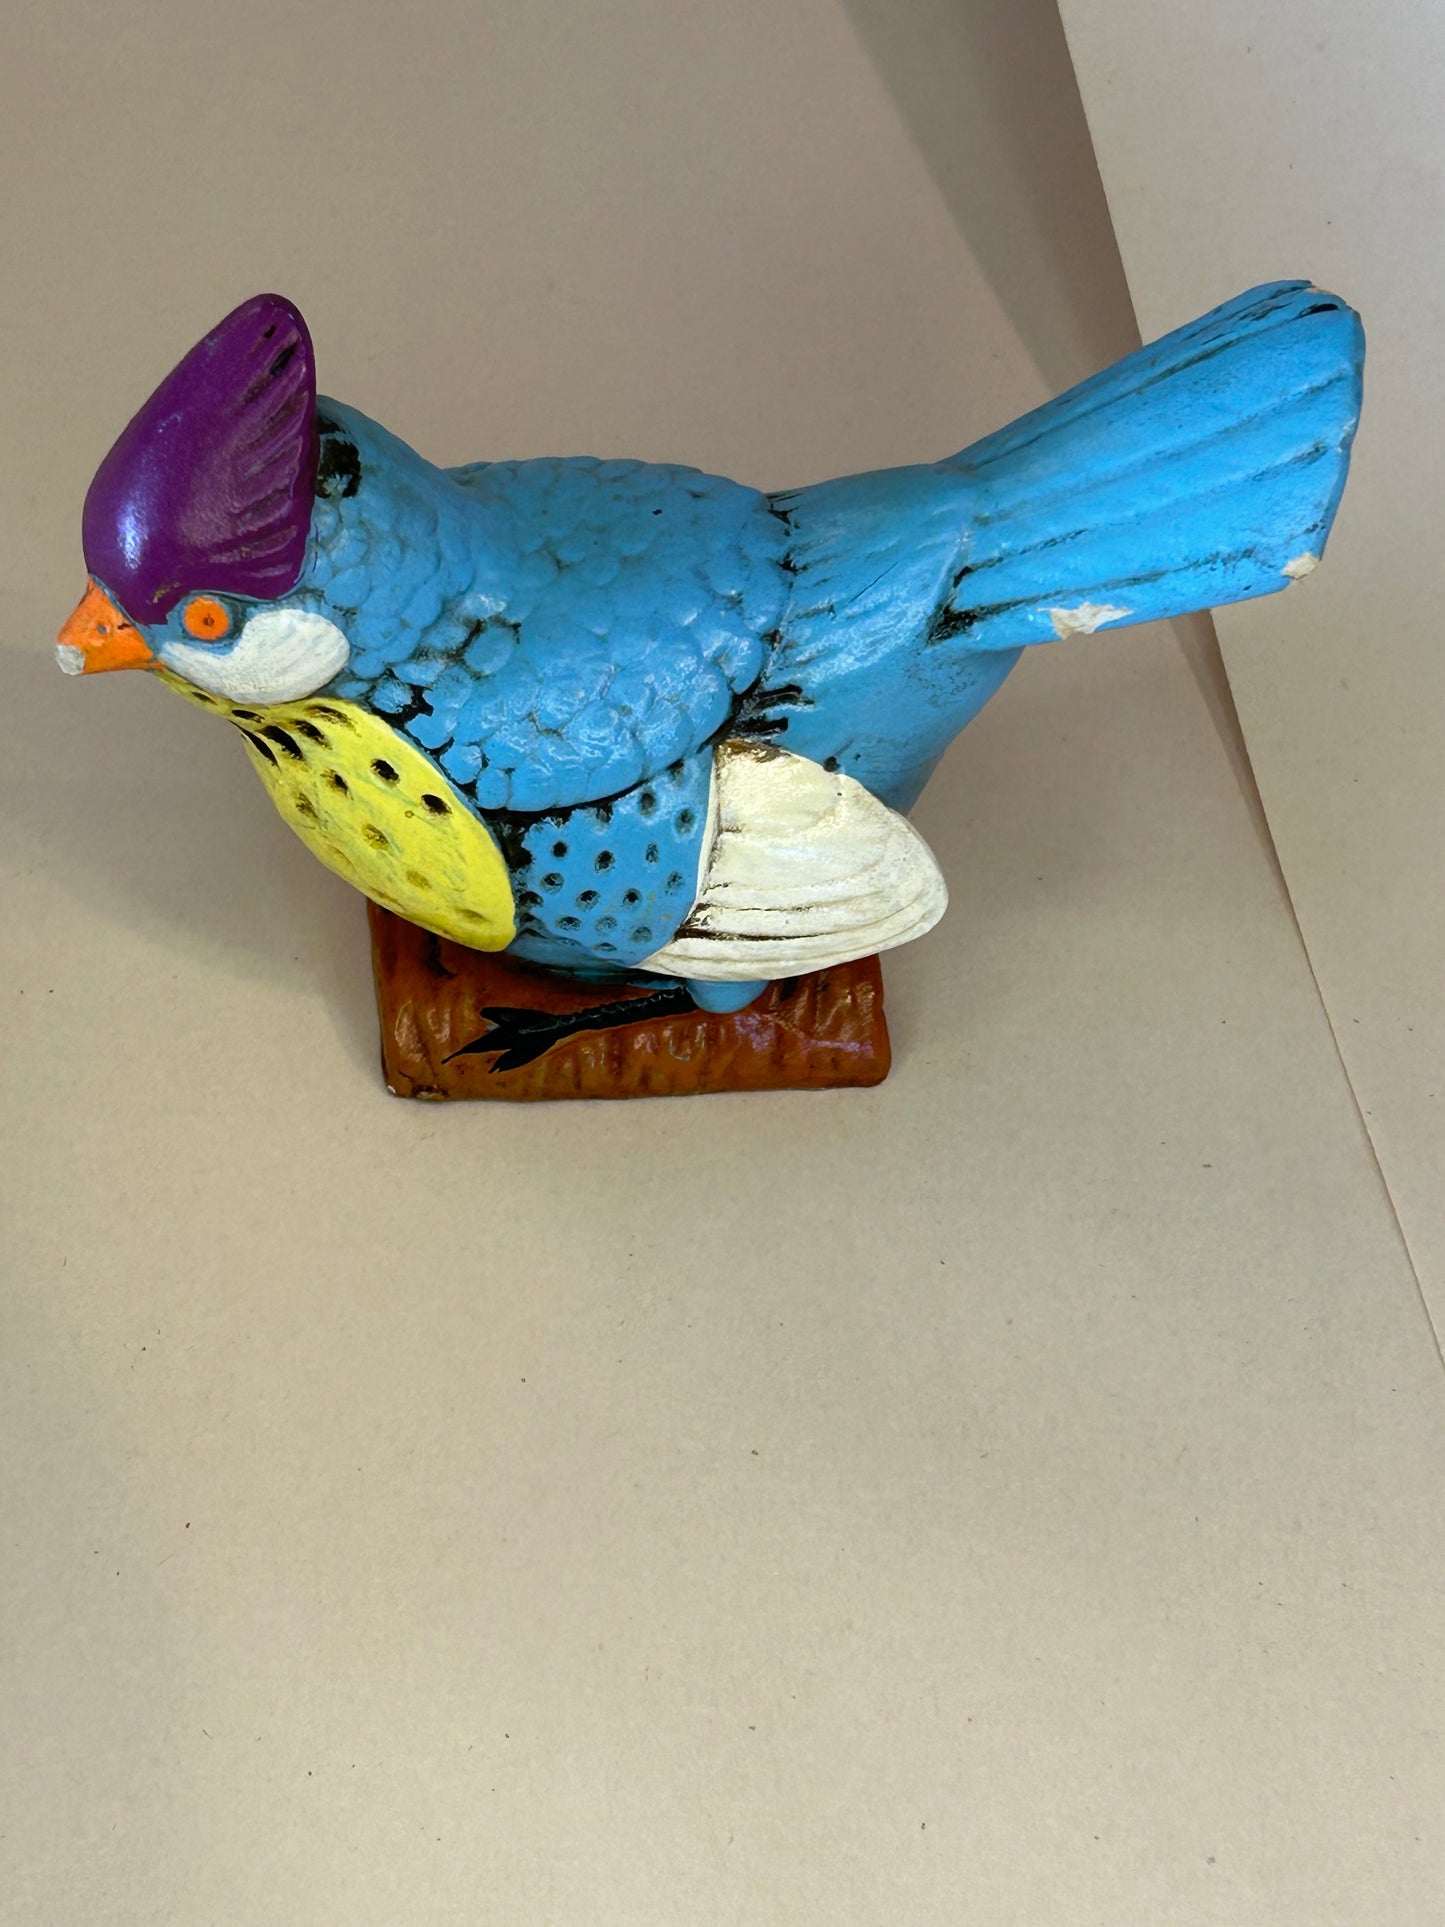 Vintage Norleans Blue Bird with Original Branding Sticker on Bottom - Good Condition